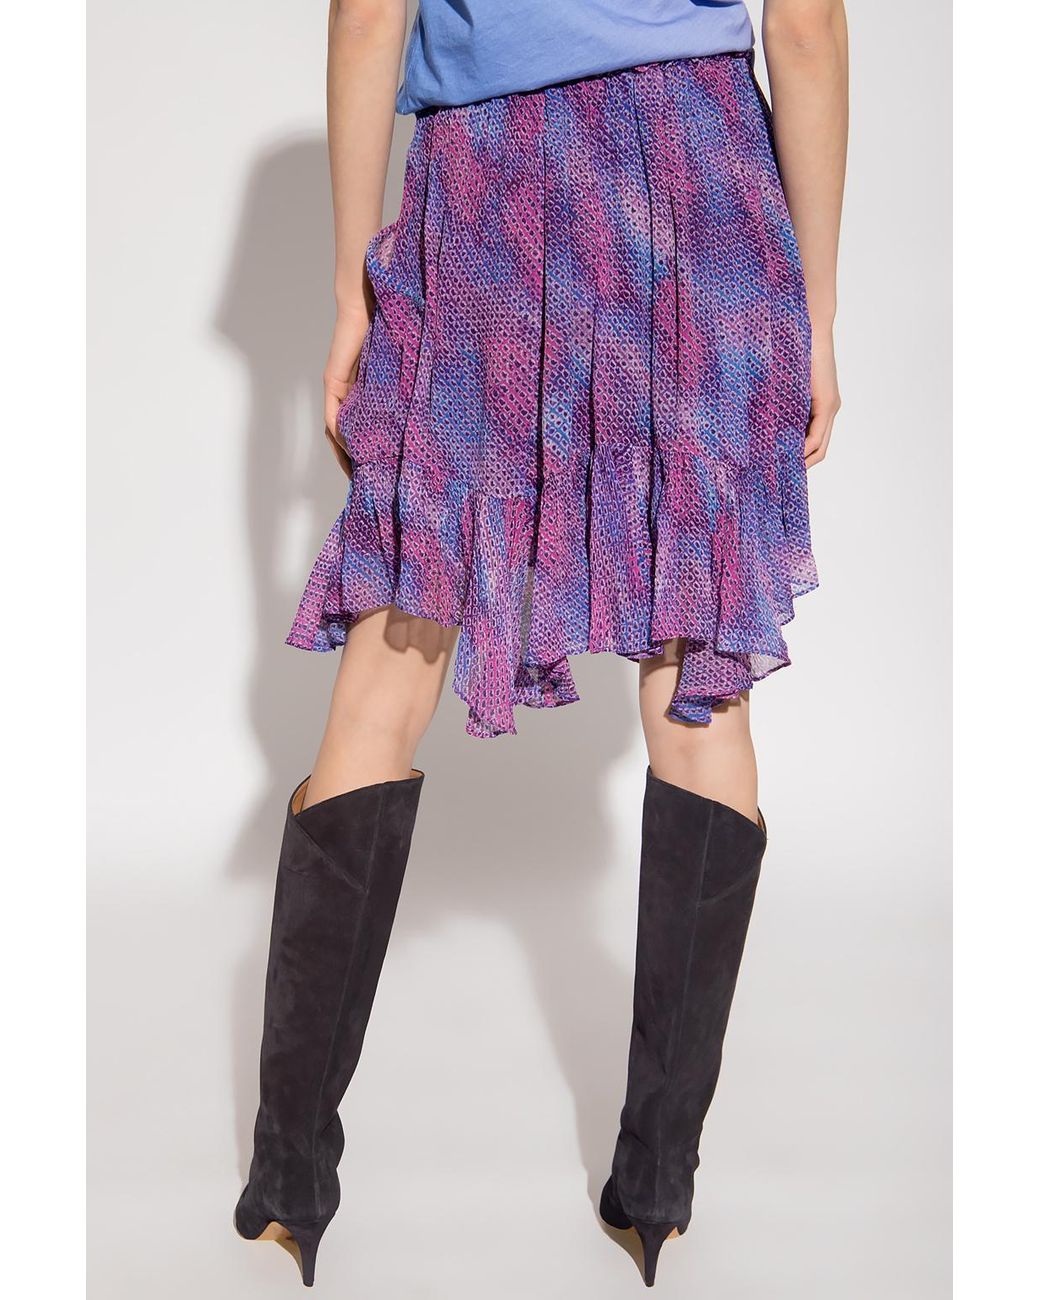 Isabel Marant Silk 'aviviane' Patterned Skirt in Purple | Lyst